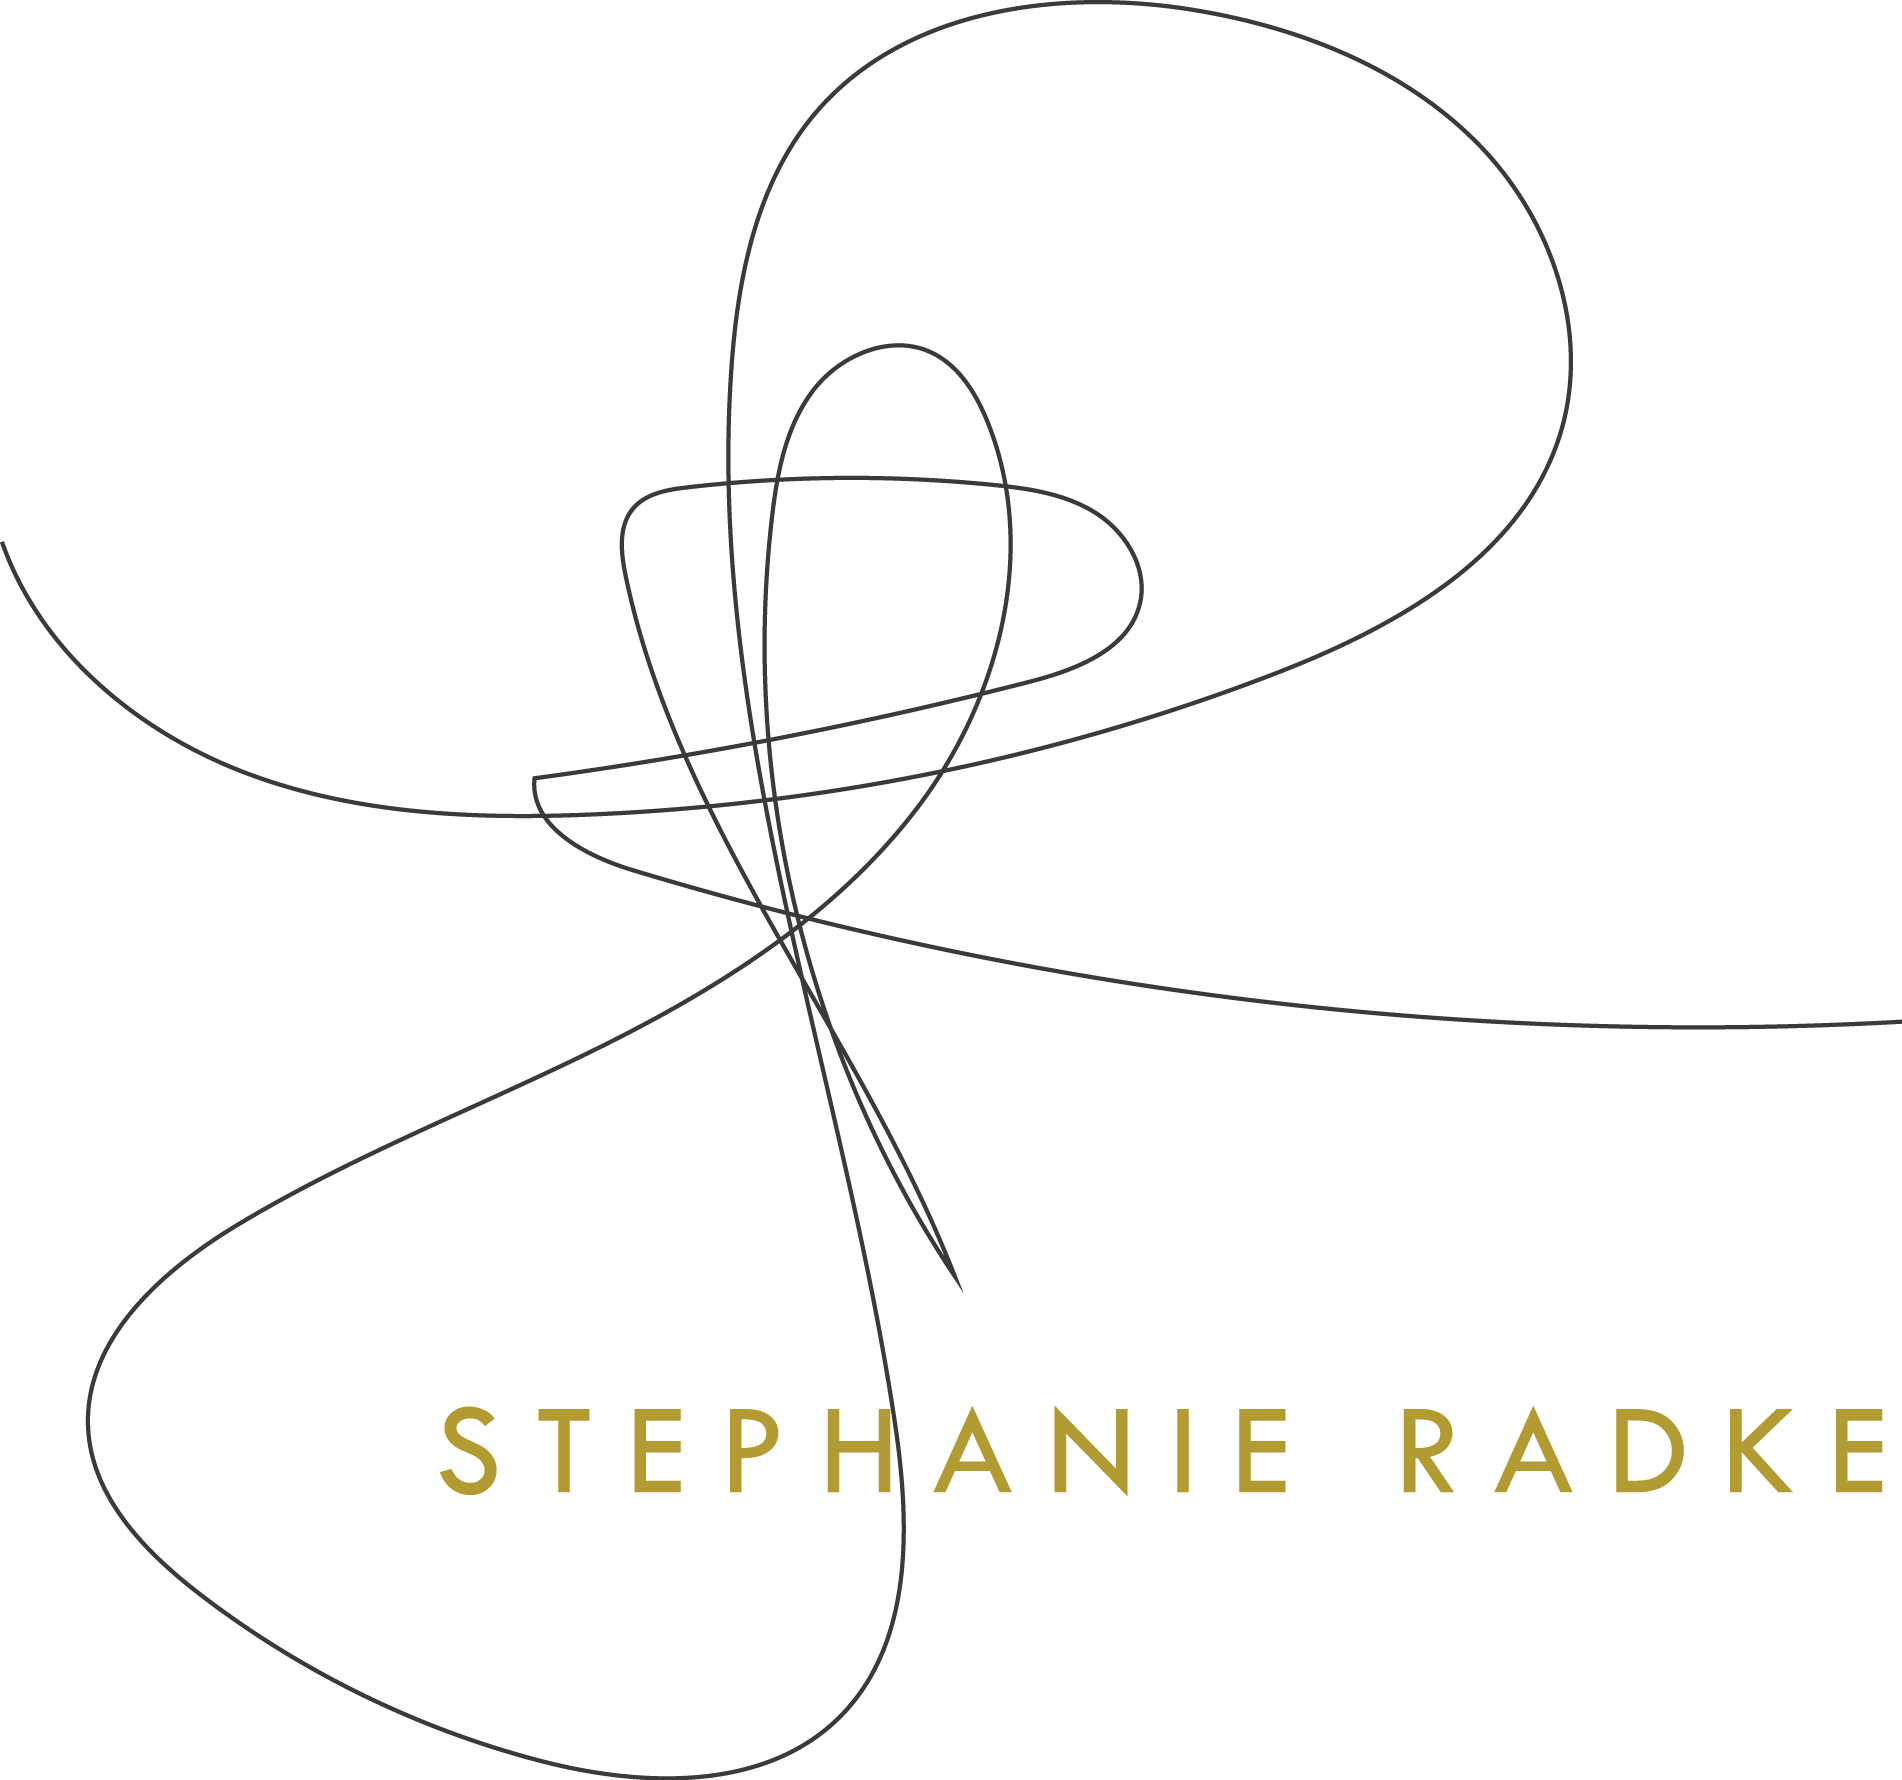 Stephanie Radke Art